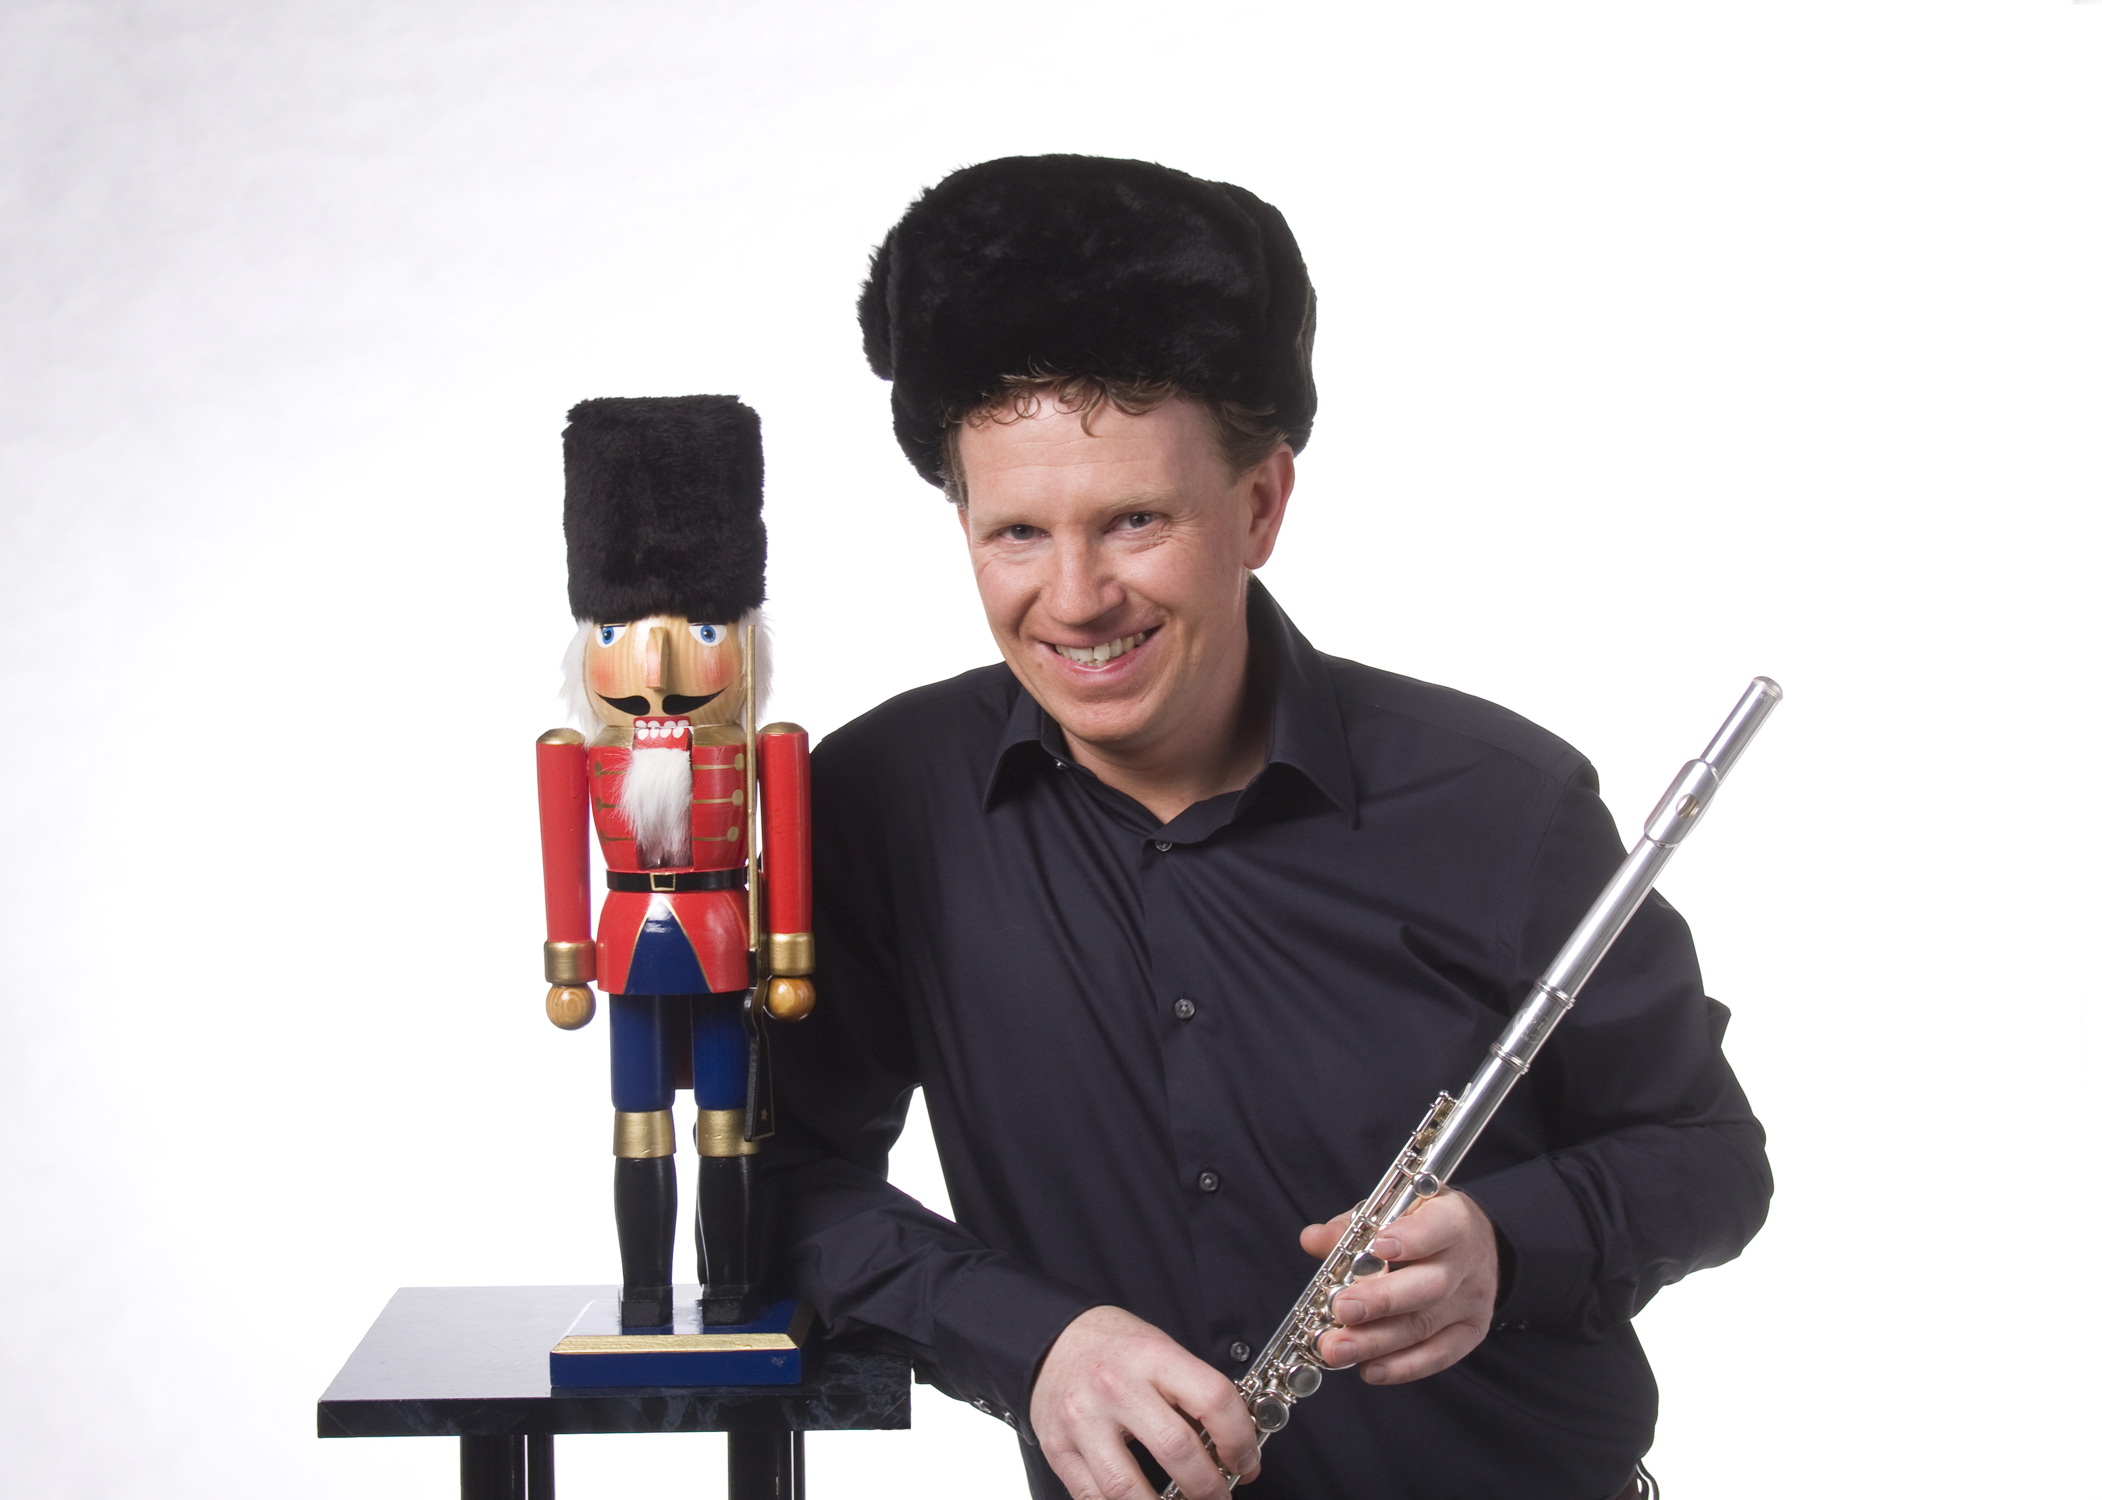 Man sieht einen Nussknacker aus Holz in den Farben rot und blau, der auf einem Podest steht. Neben ihm steht ein Musiker mit einer Querflöte in der Hand.